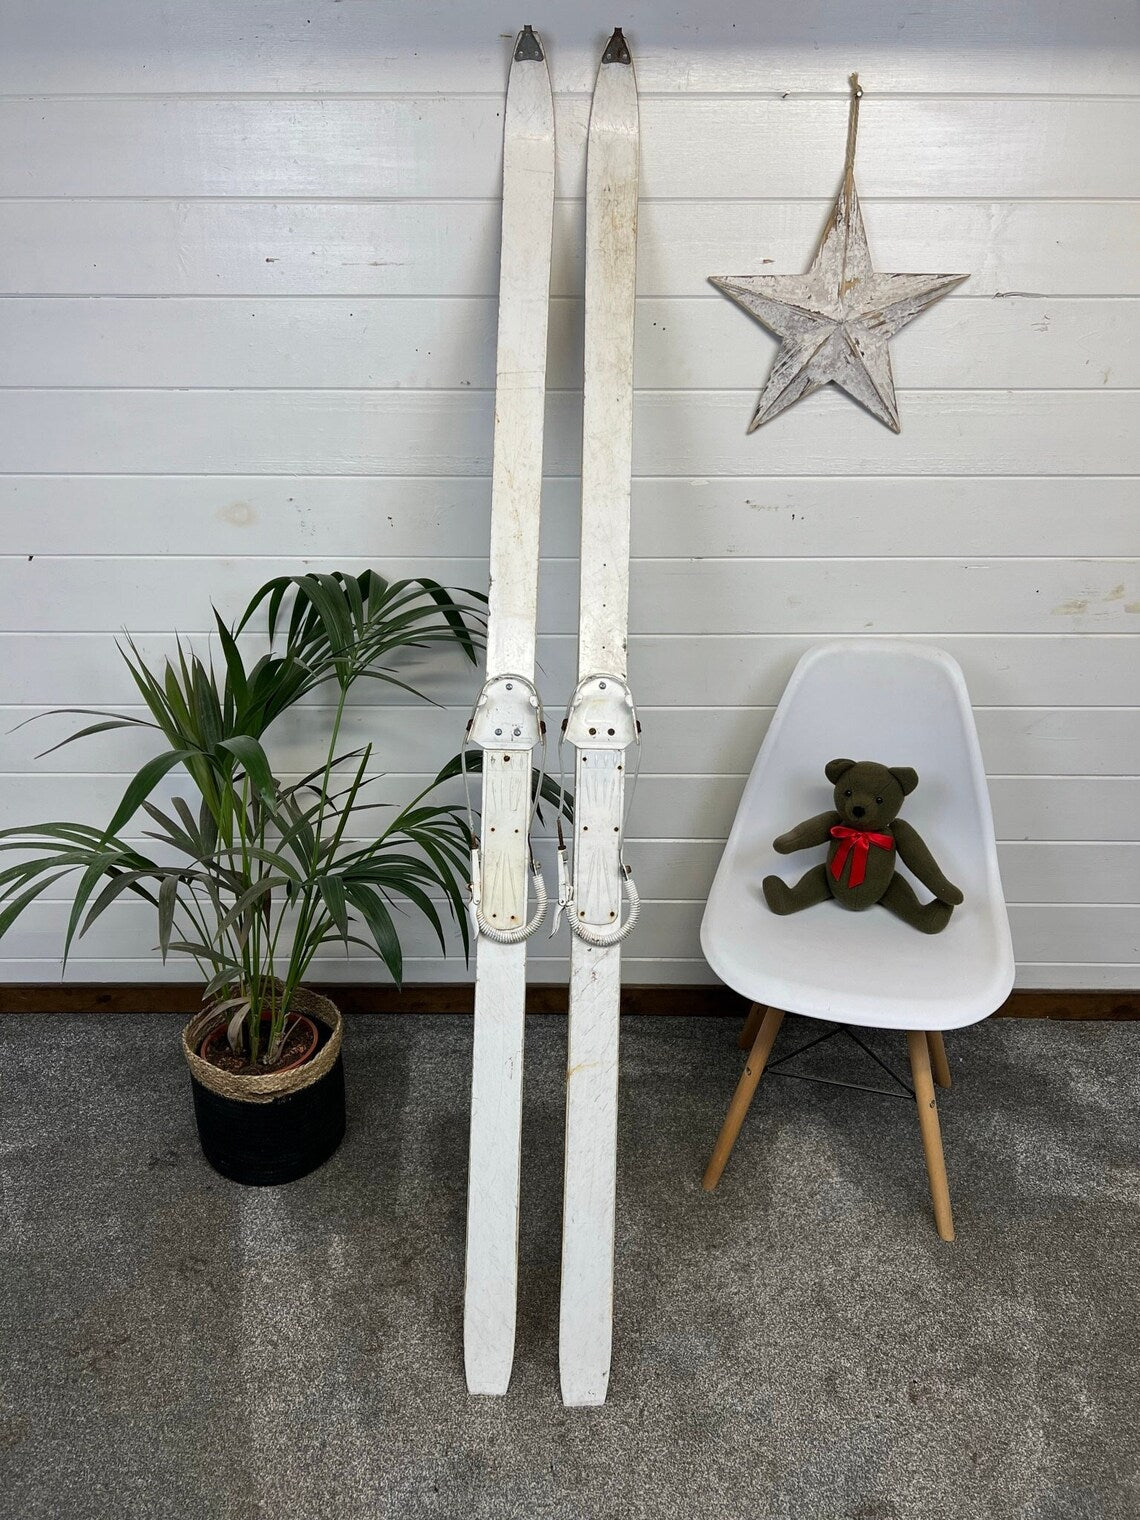 Vintage Rustic White Skis 190cm Nordic Ski Wall Shop Display Wedding Pub Winter Decor